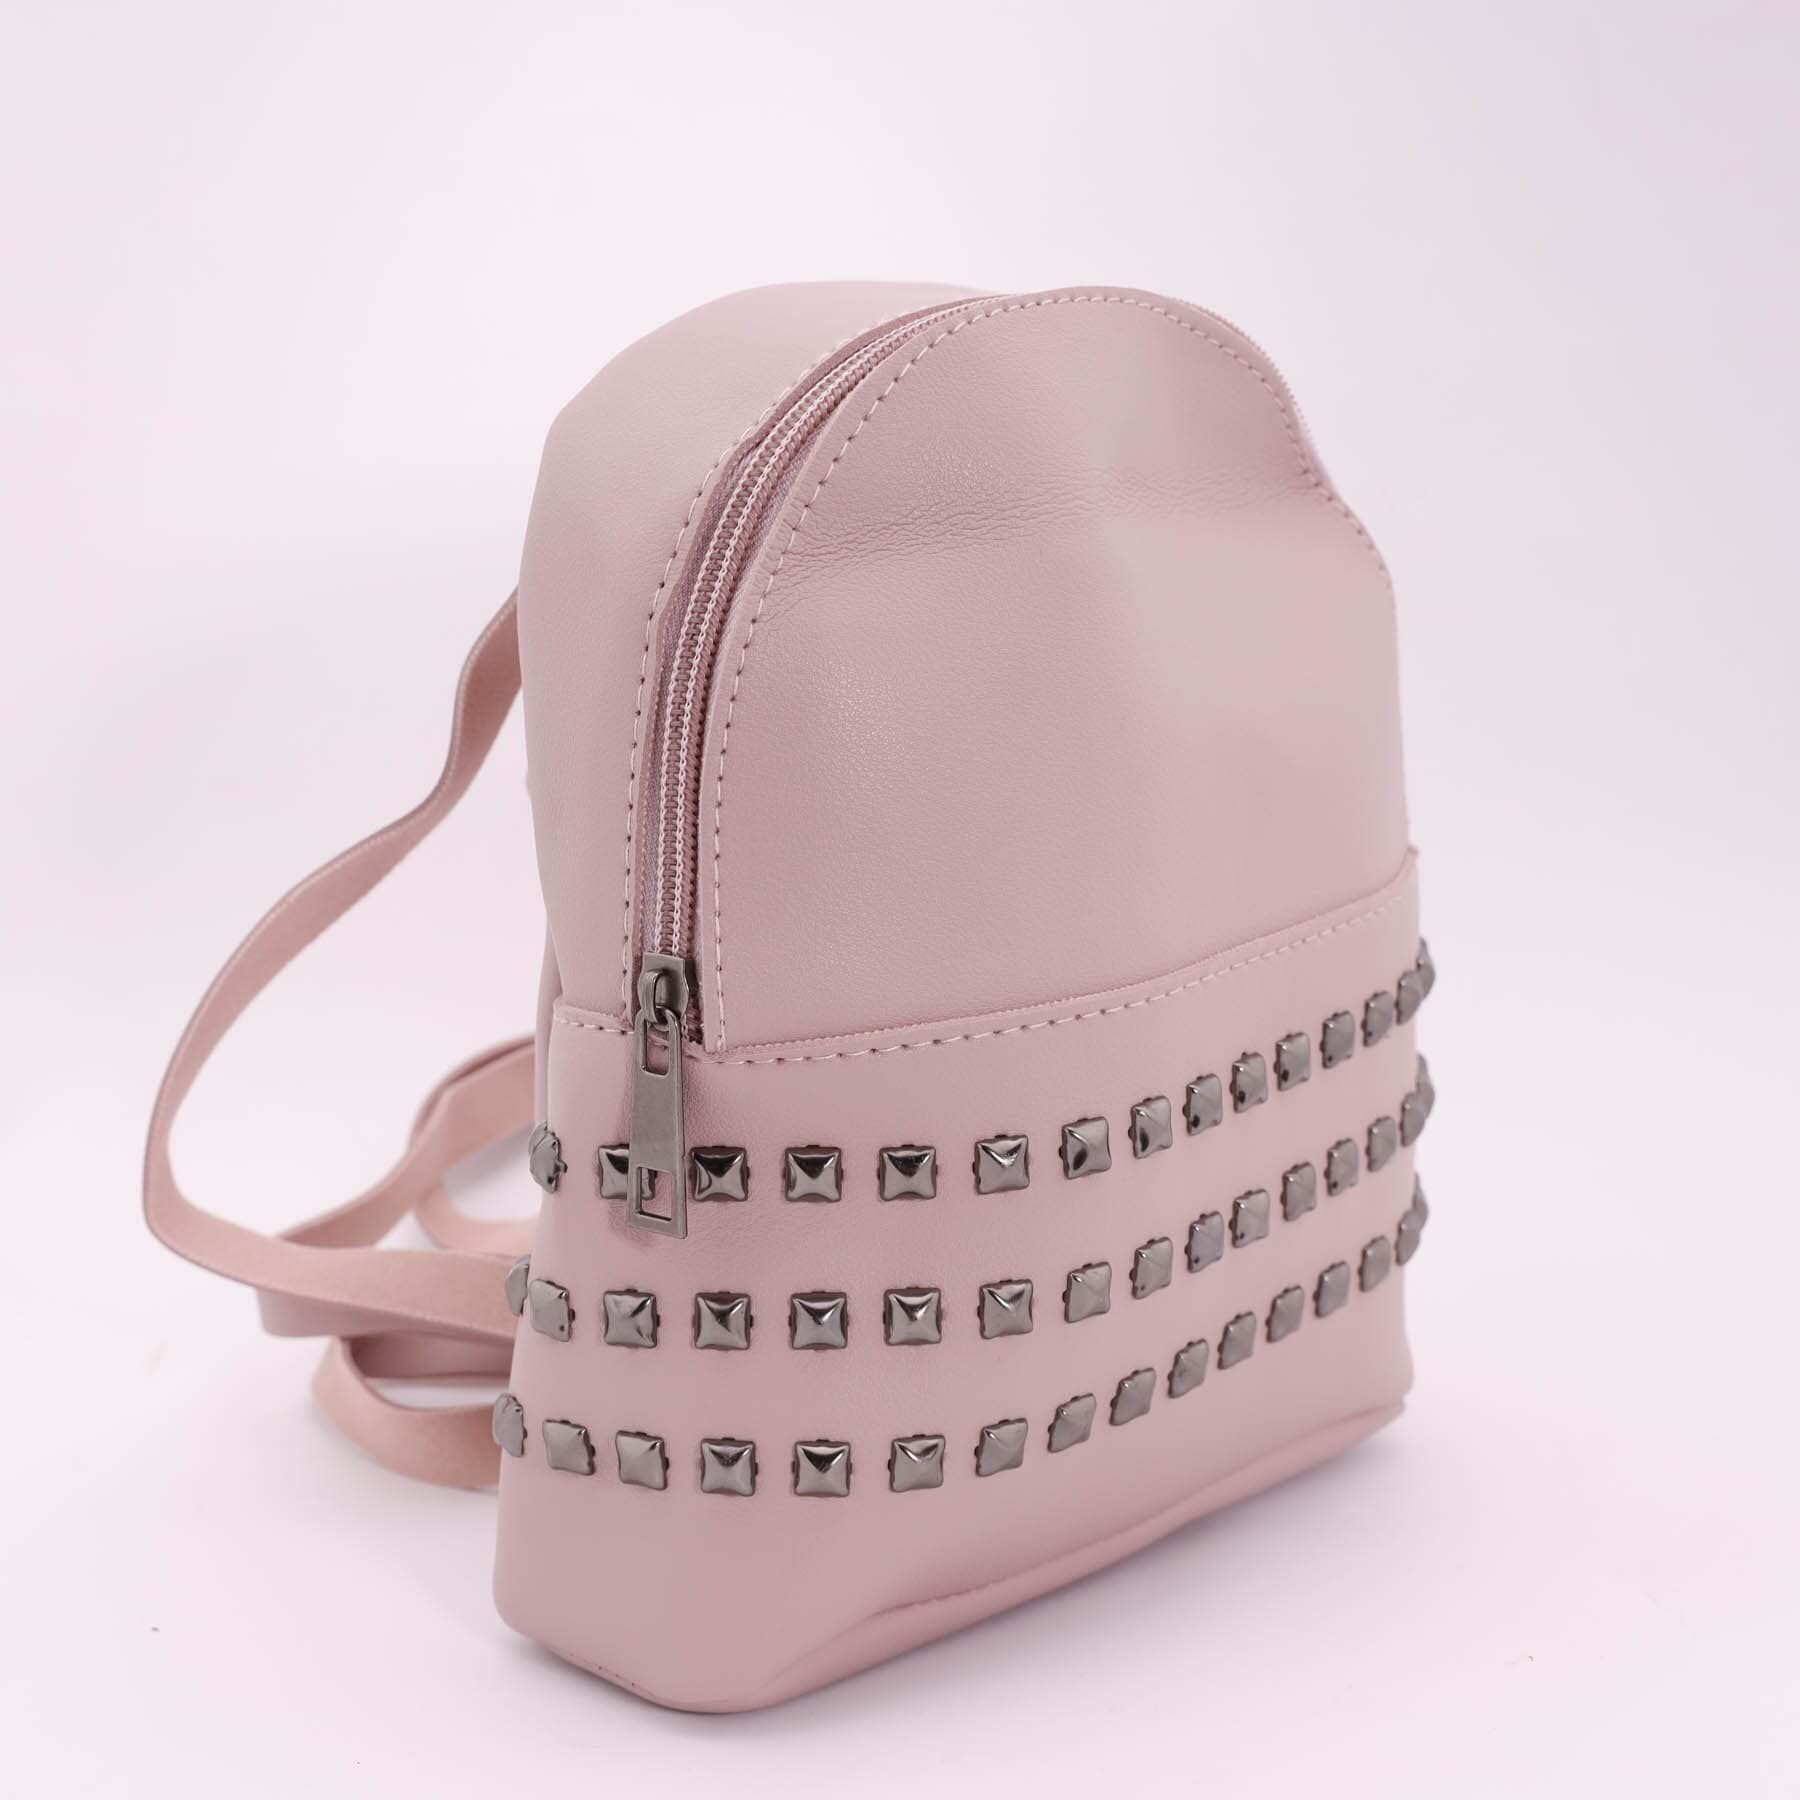 Рюкзак женский SKY эко-кожа, цвет: желтый, розовый, 1 шт